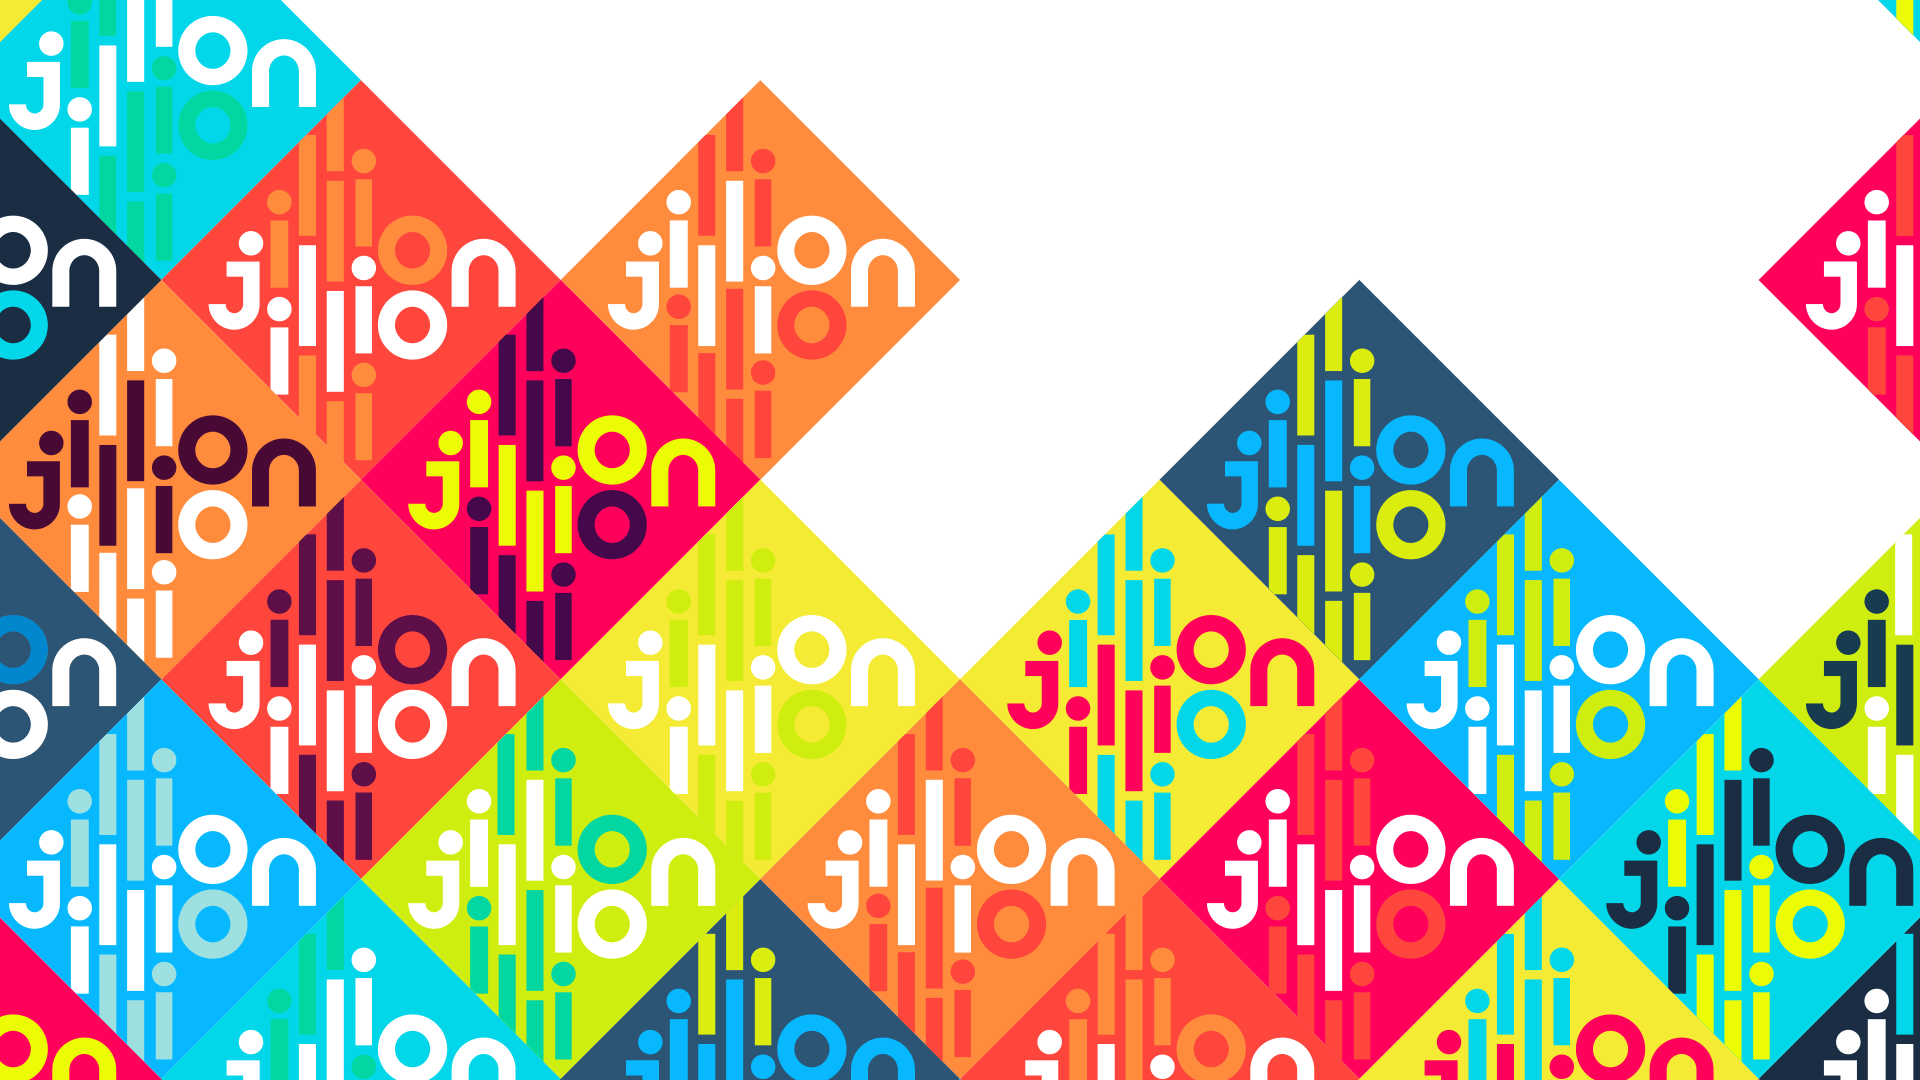 jillion-header